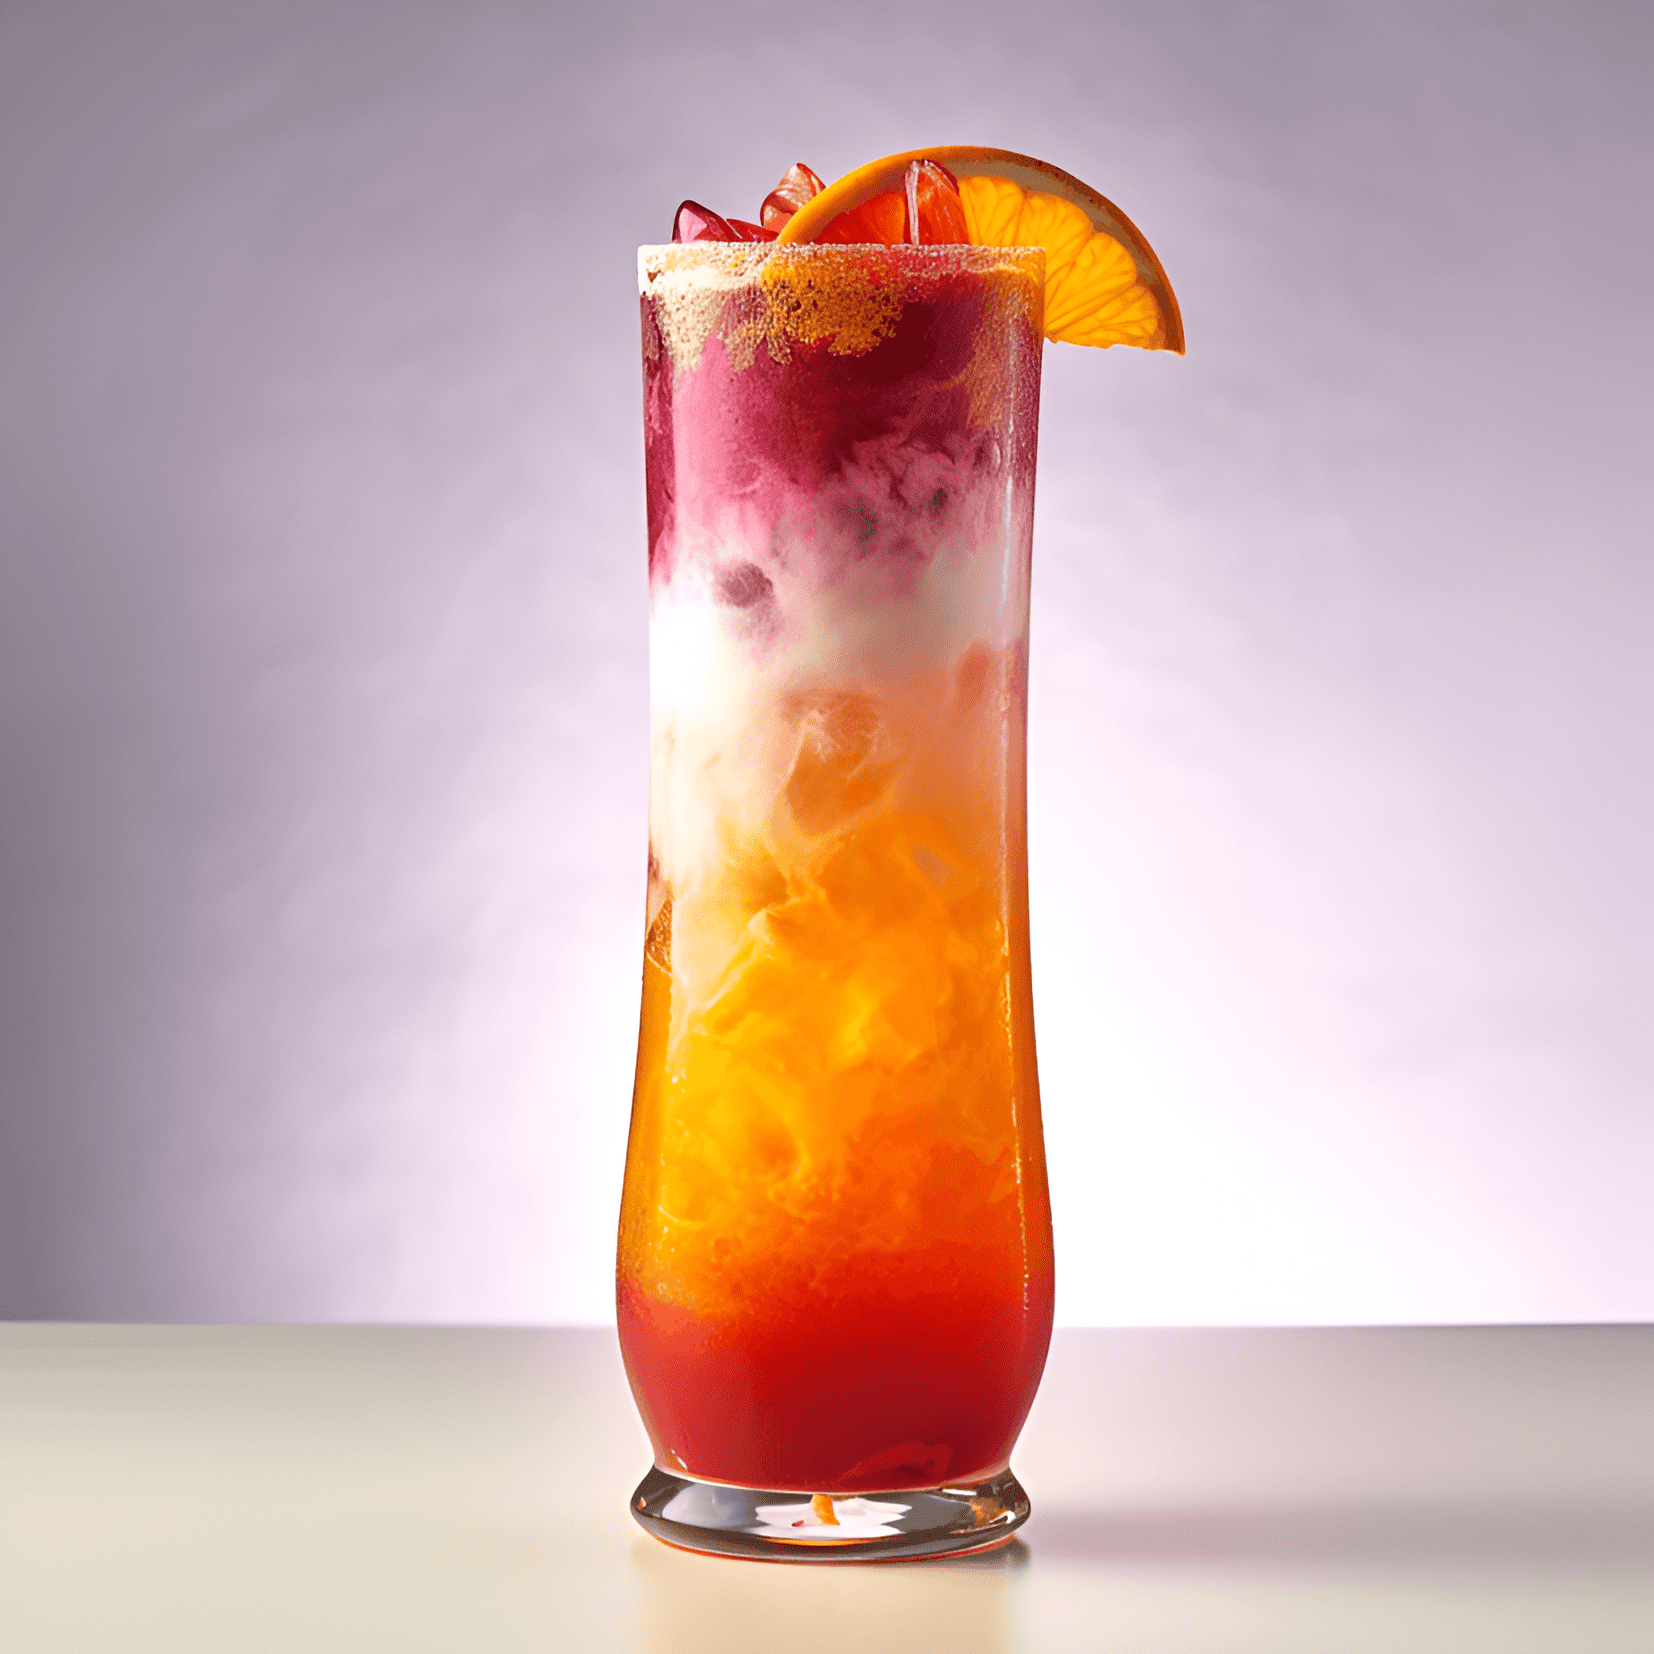 El cóctel Hurricane es una bebida afrutada, dulce y picante con un fuerte sabor a ron. La combinación de sabores de maracuyá, naranja y lima crea un sabor refrescante y tropical, mientras que la granadina agrega un toque de dulzura.